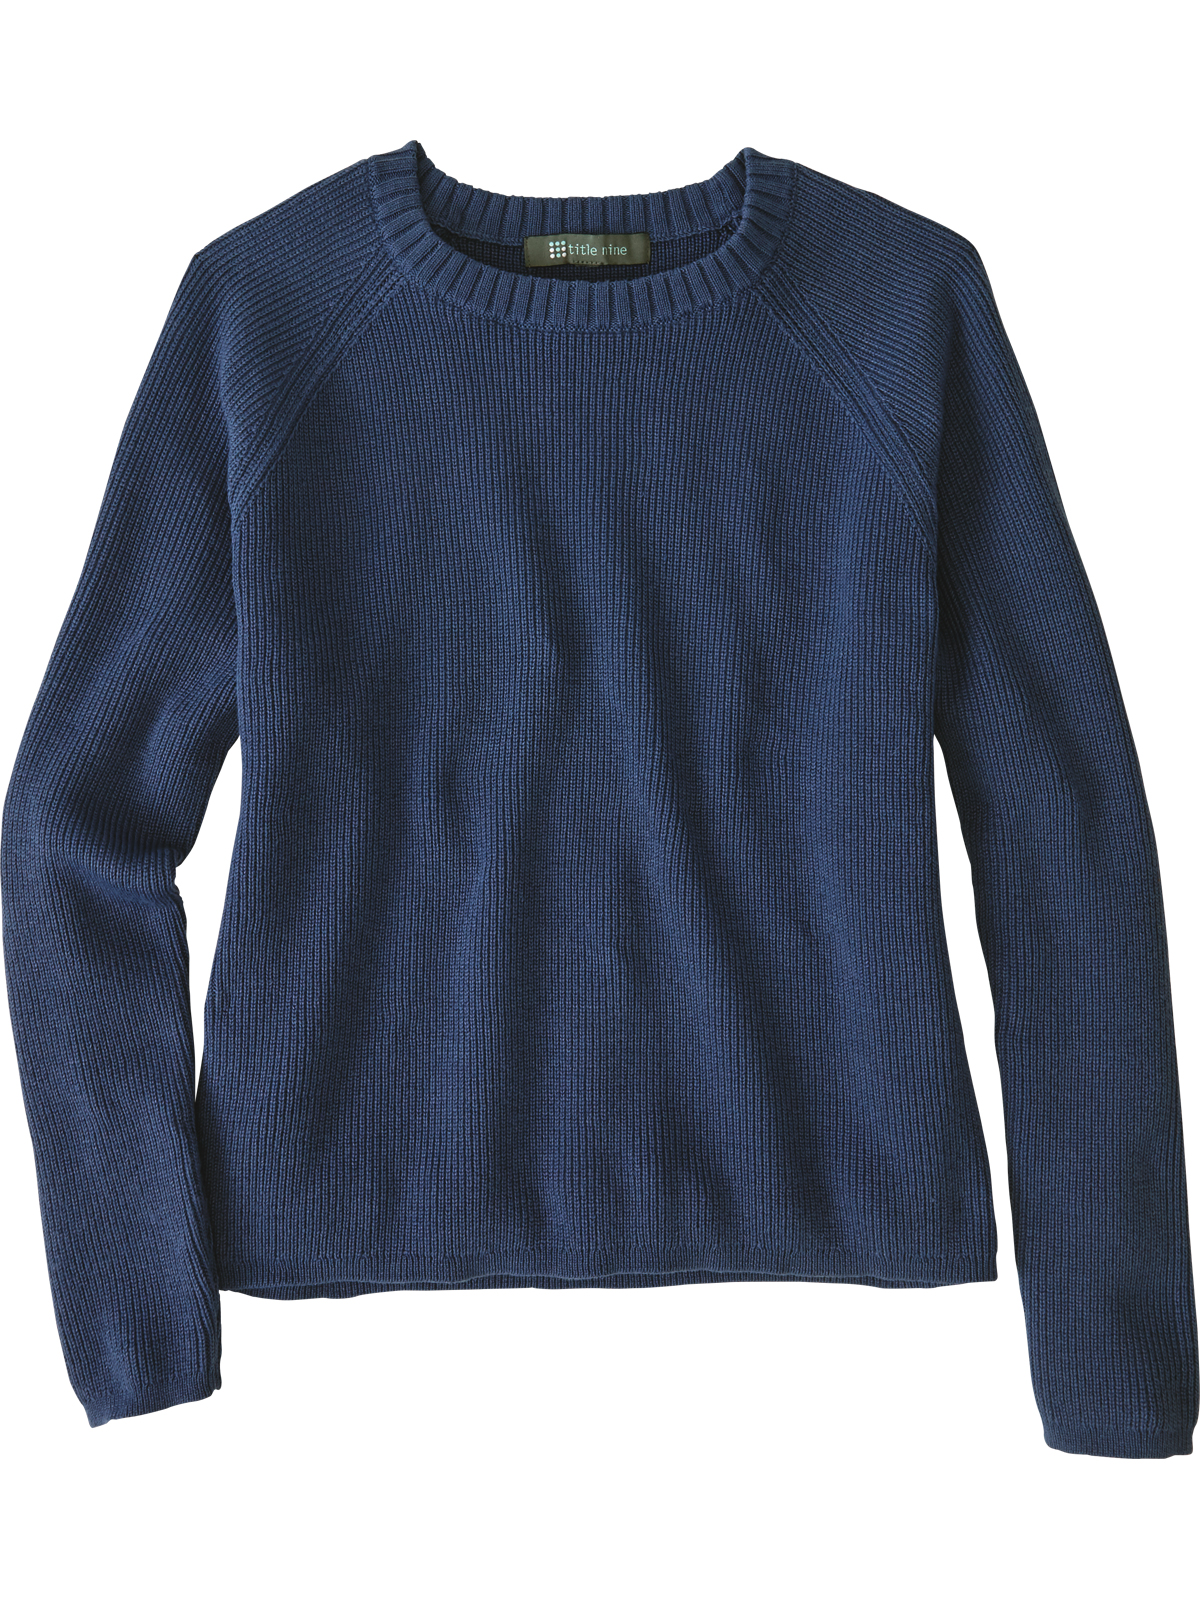 Warm Sweaters & Women's Sweaters | Title Nine